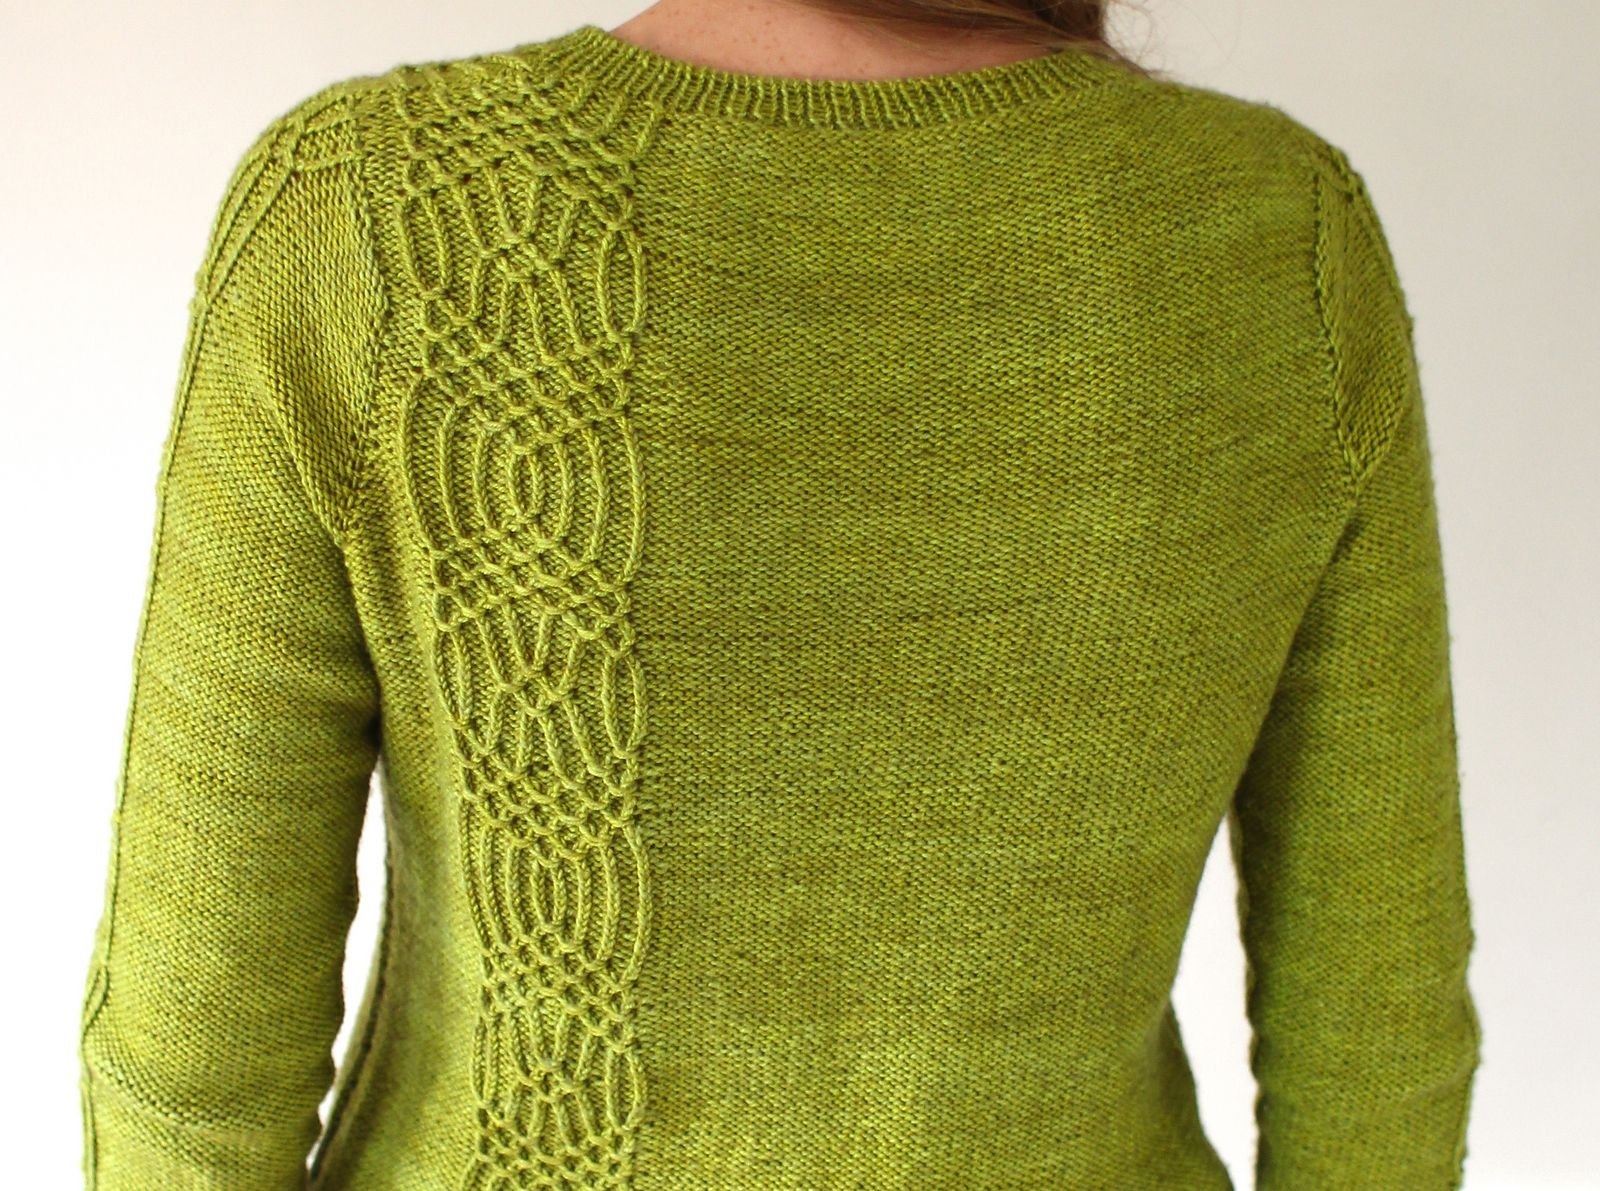 Узор для вязания джемпера. Пуловер eco123 Ravelry. Пуловер Samoon пуловер. Вязаный свитер. Красивый узор для свитера.